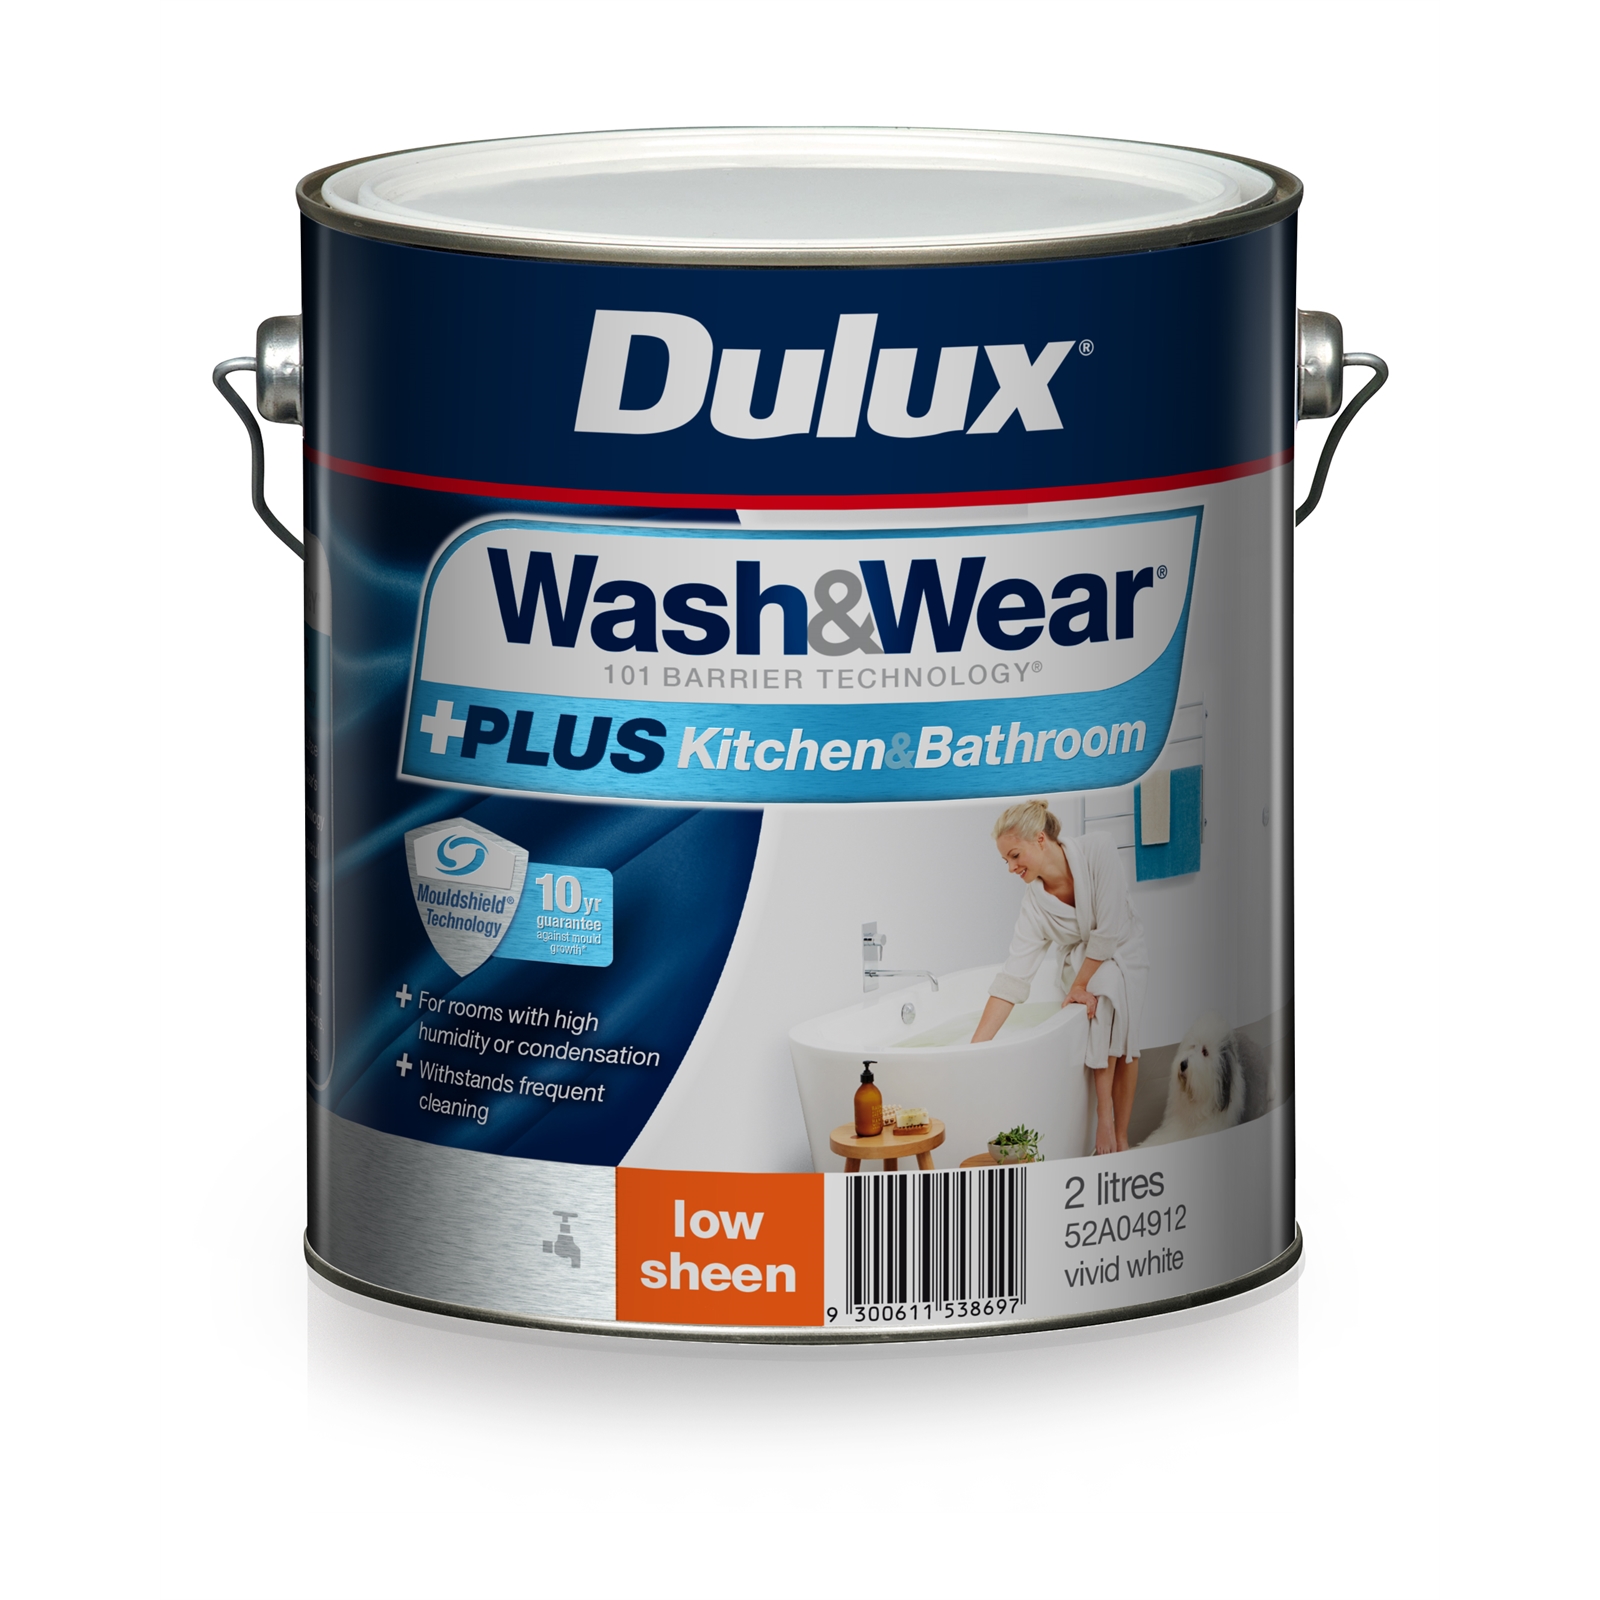 Dulux Wash&Wear 2L +Plus Kitchen & Bathroom Vivid White Low Sheen Paint